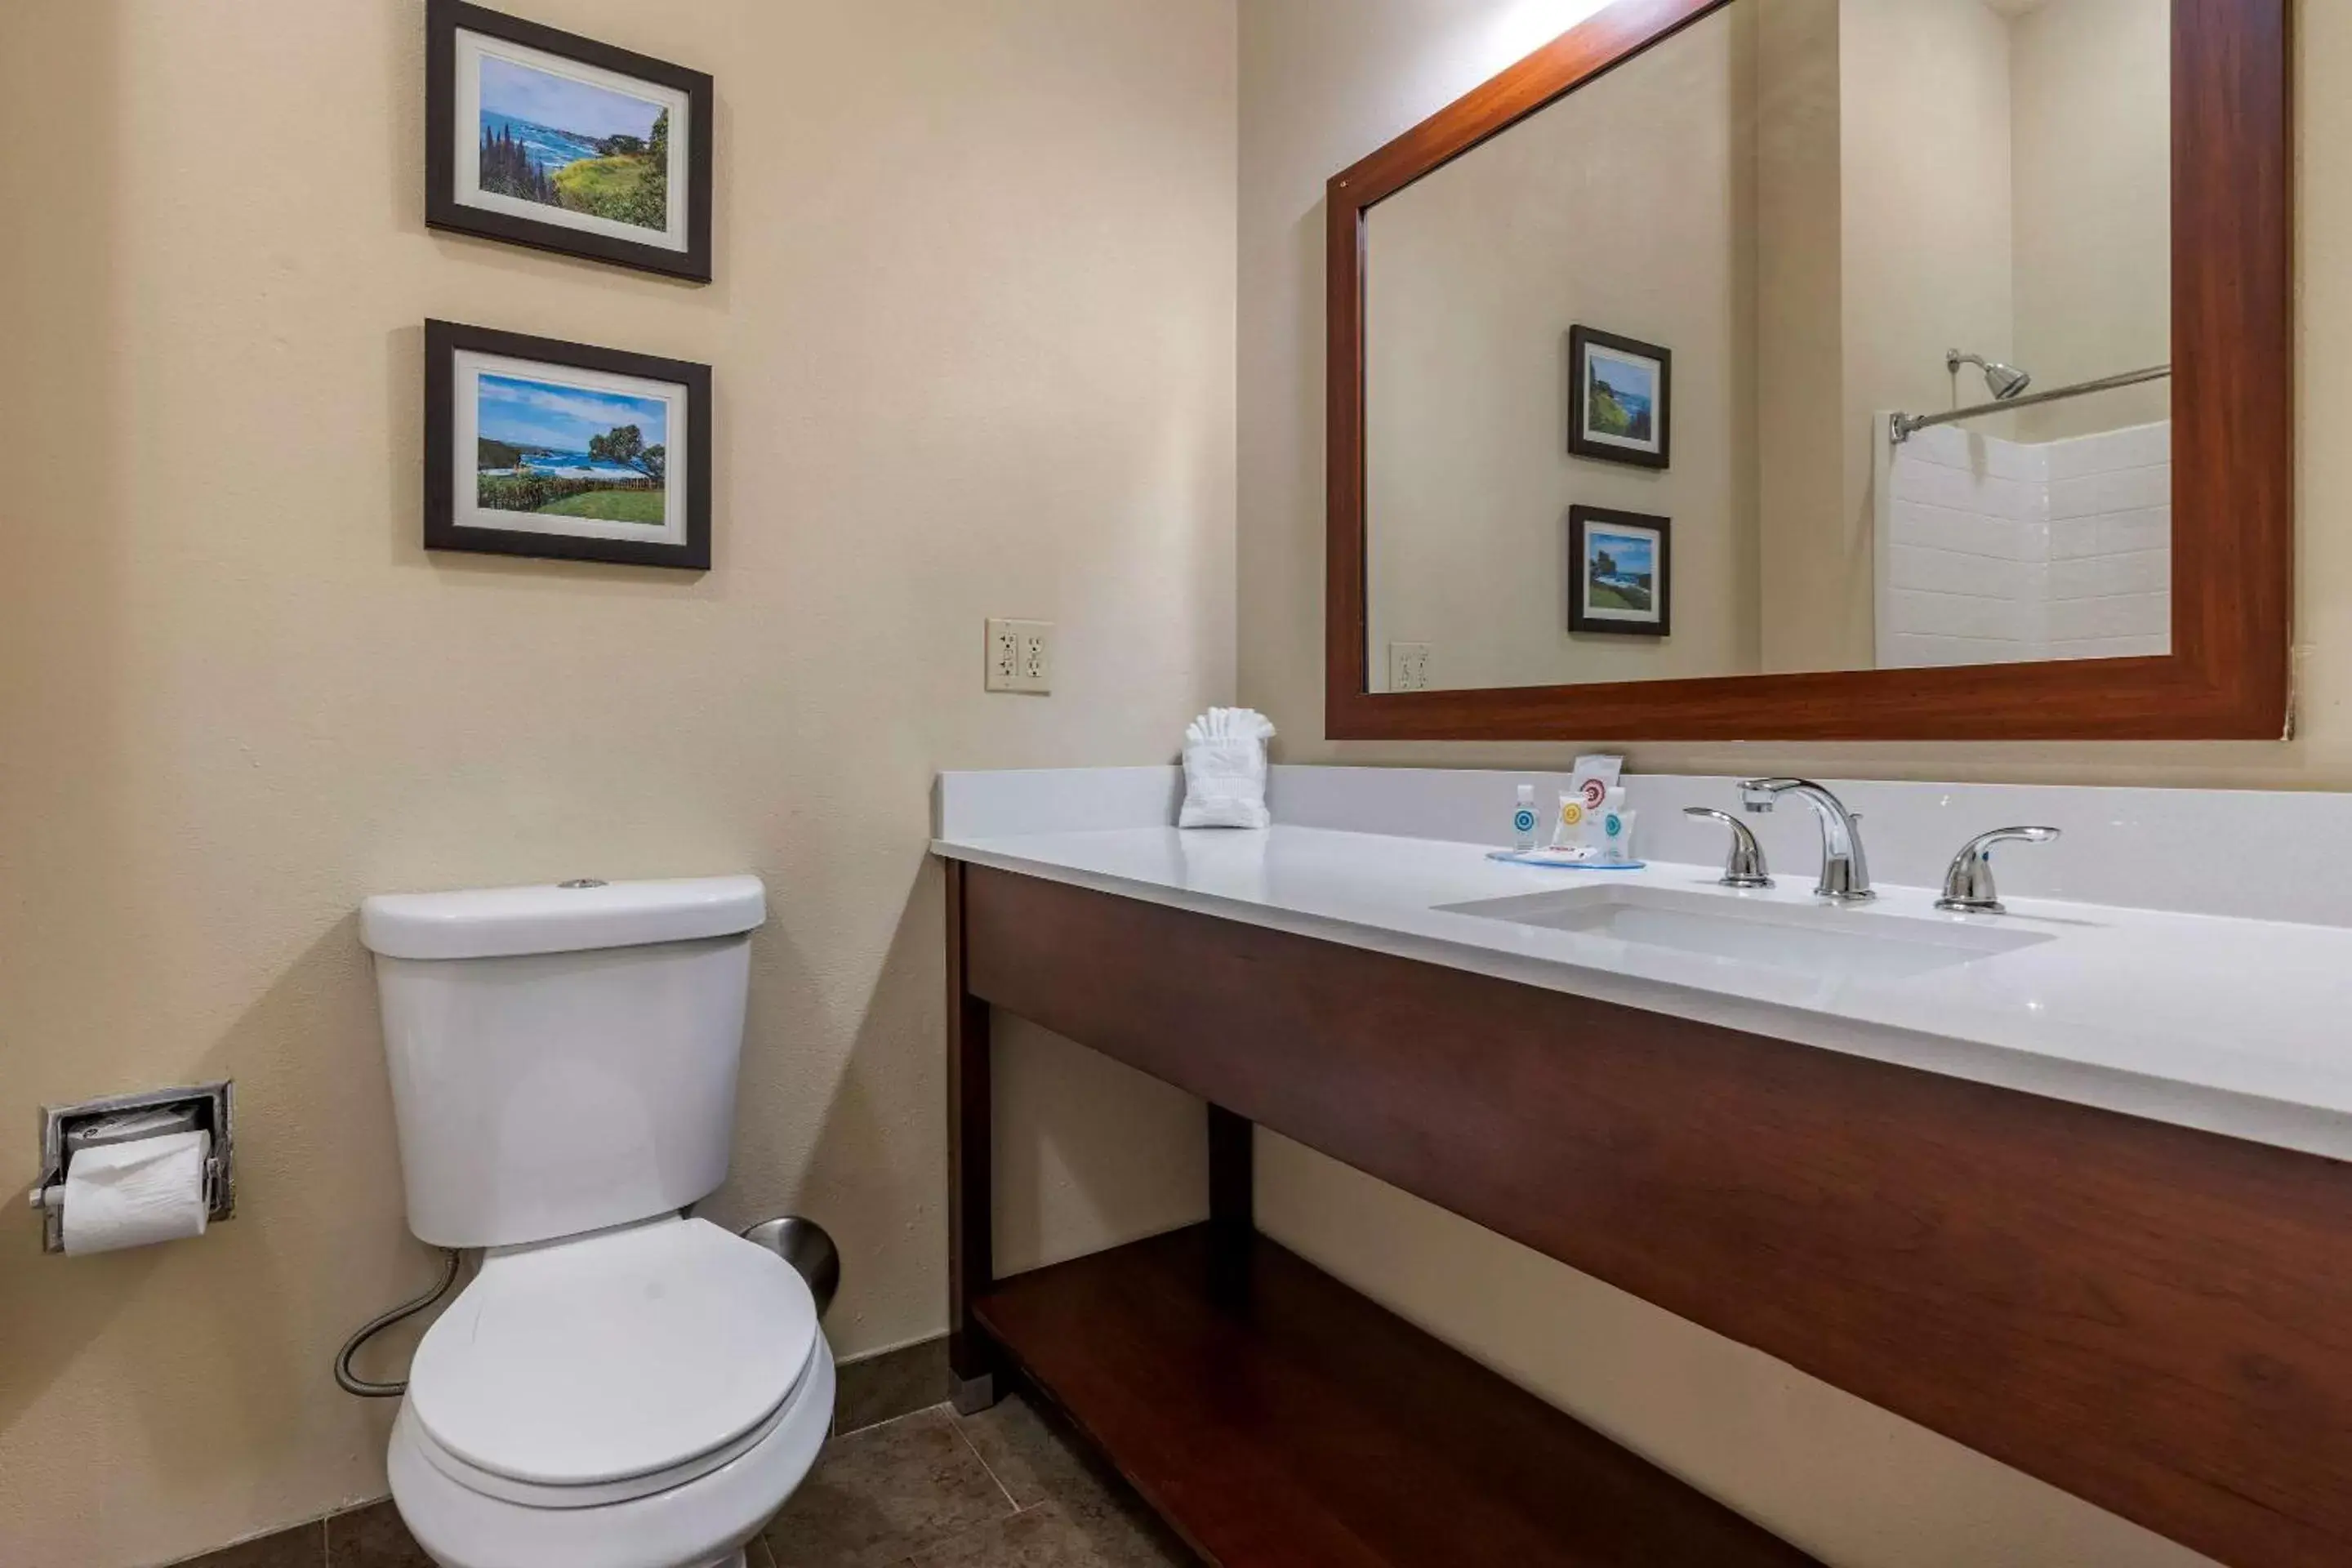 Bedroom, Bathroom in Comfort Inn & Suites Ukiah Mendocino County